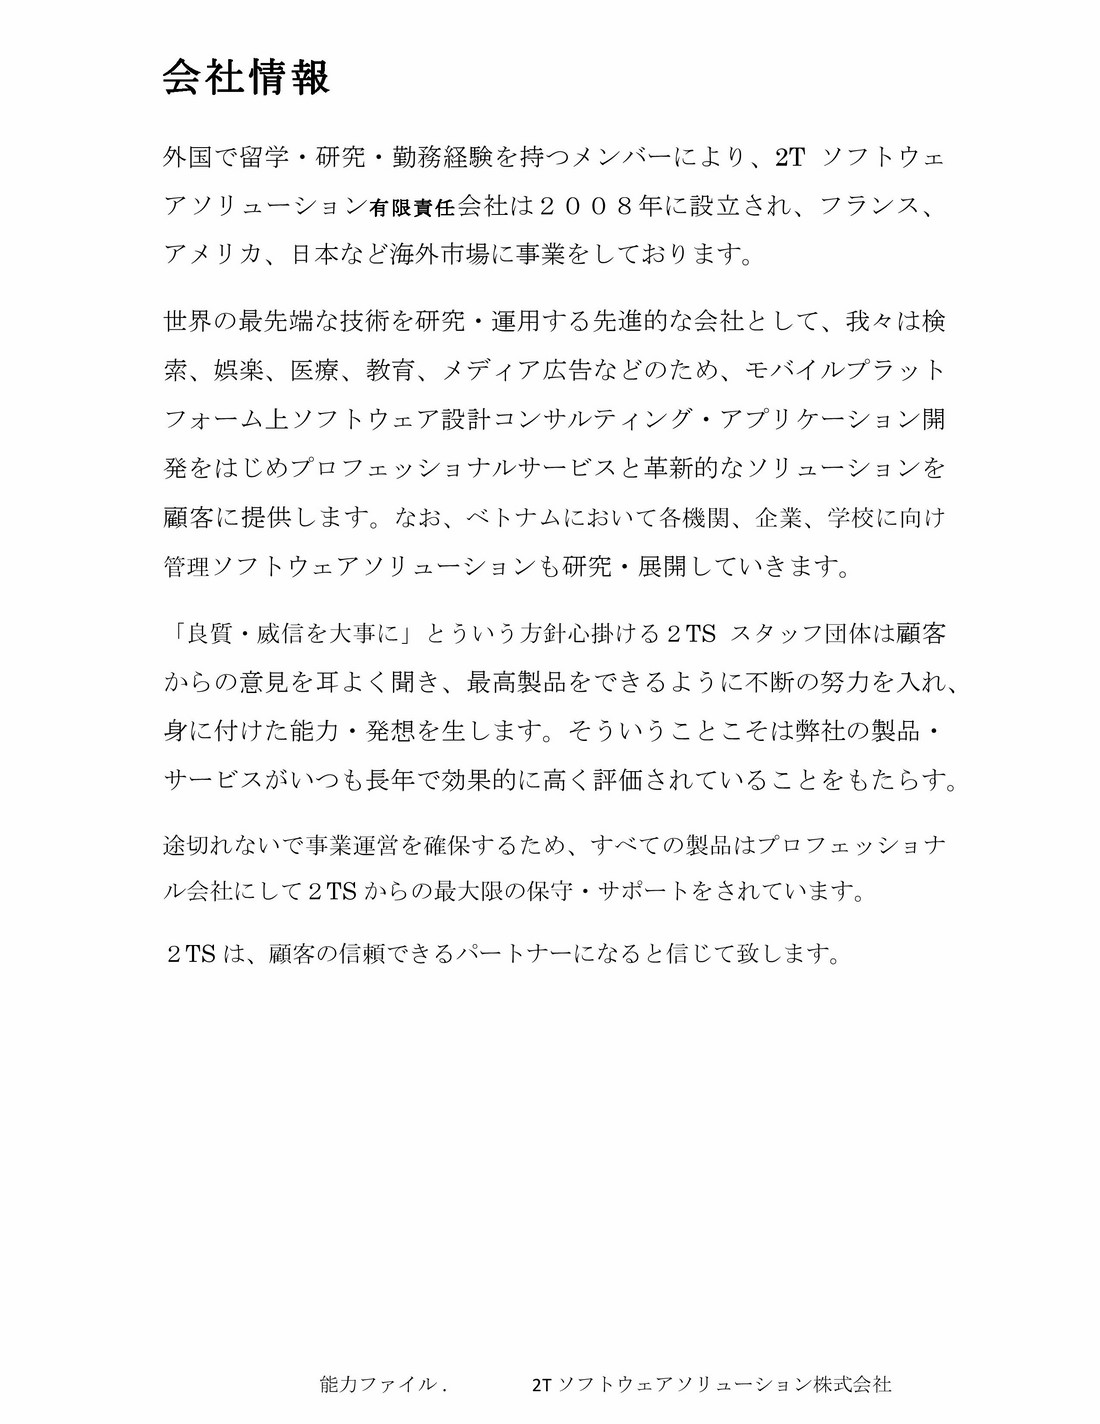 2TS Profile_jap_2015-10-21-page-002 (Copy)